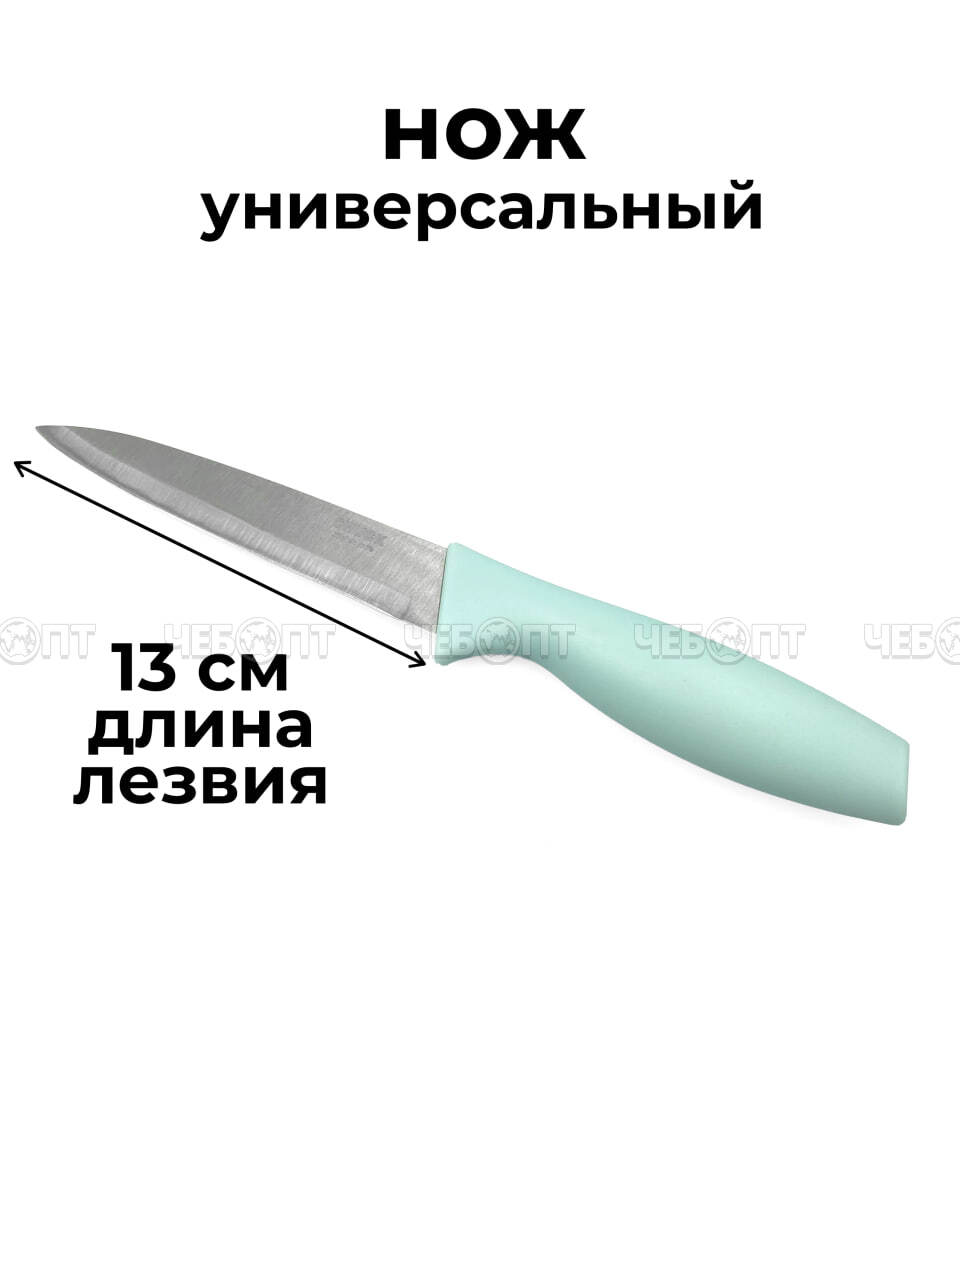 Набор кухонных ножей 3 предмета (нож поварской, универсальный, для овощей) арт. 260058 $ [120] GOODSEE. ЧЕБОПТ.